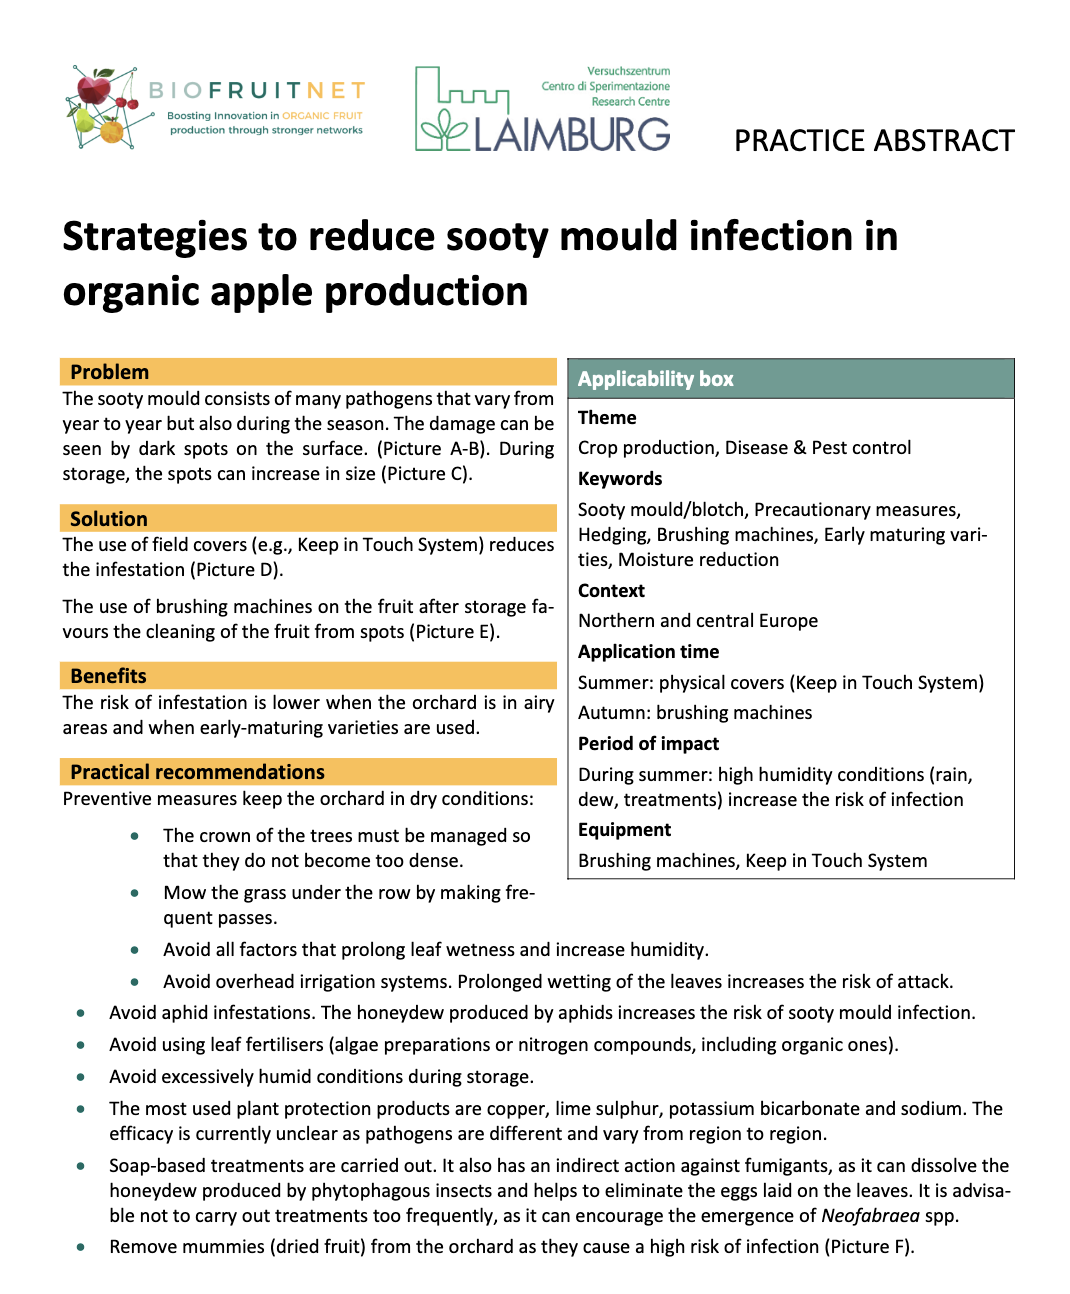 Estrategias para reducir la infección por fumagina en la producción de manzanas orgánicas (Resumen de práctica de BIOFRUITNET)